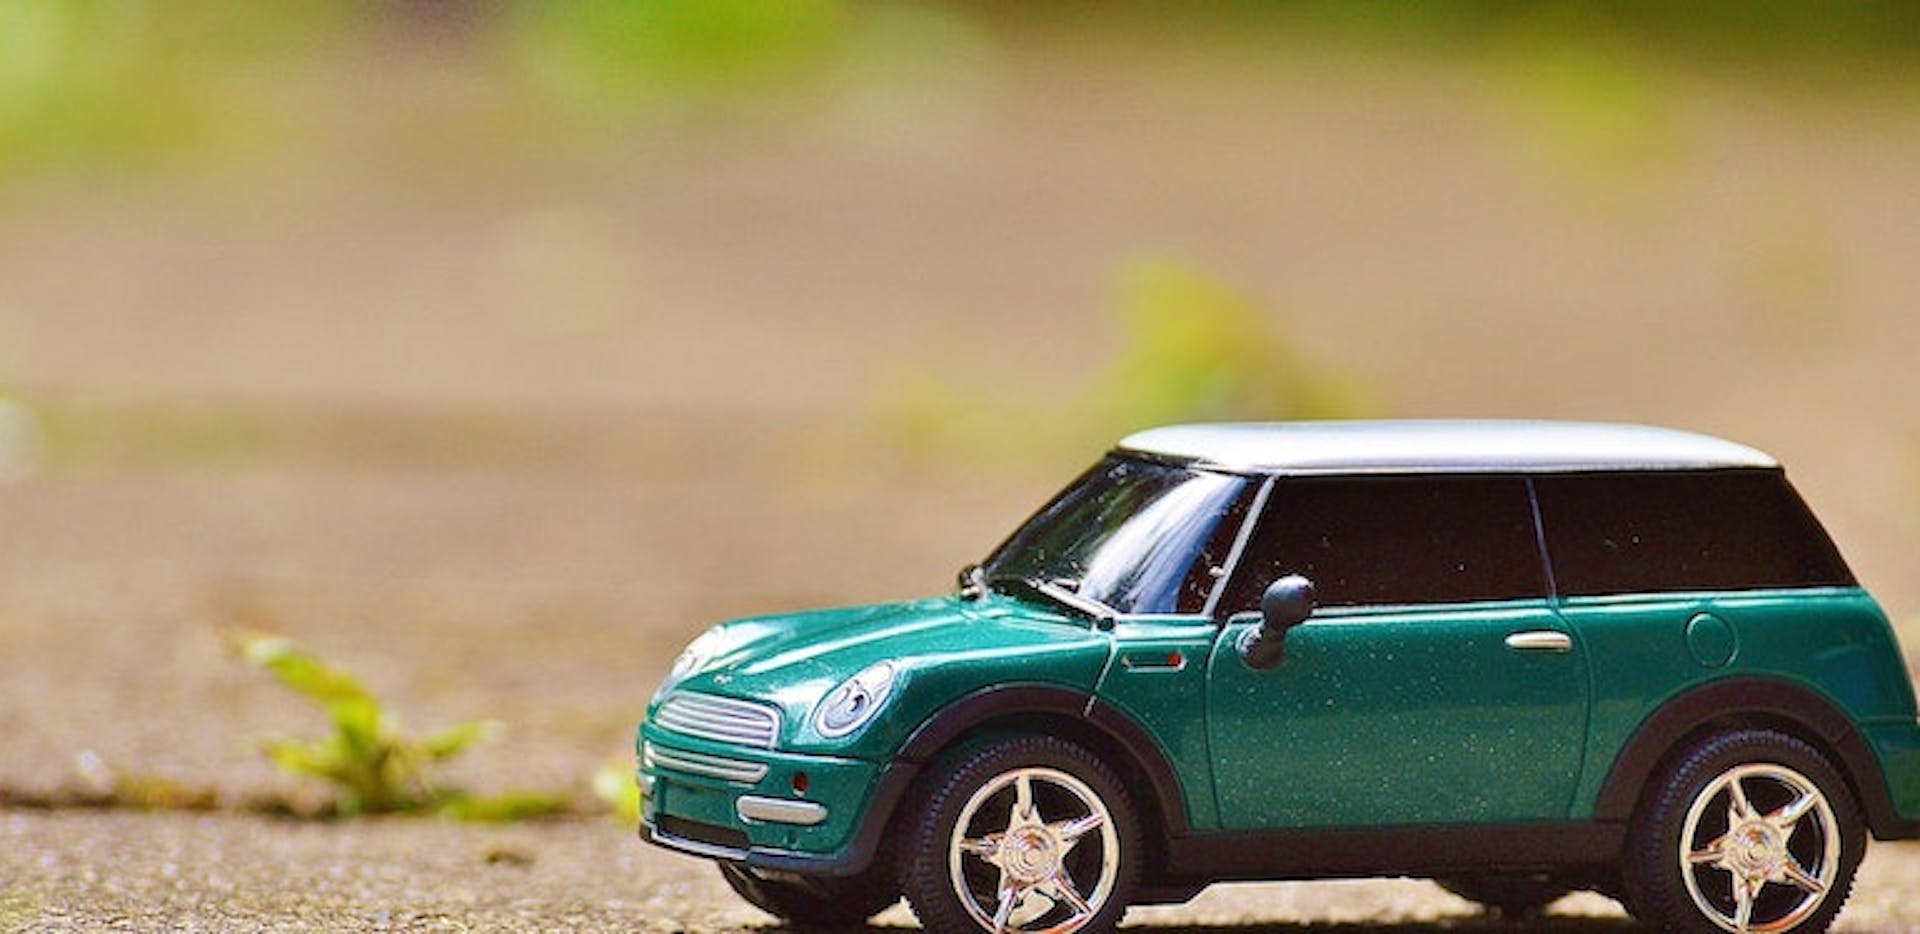 petite voiture verte sur le sol